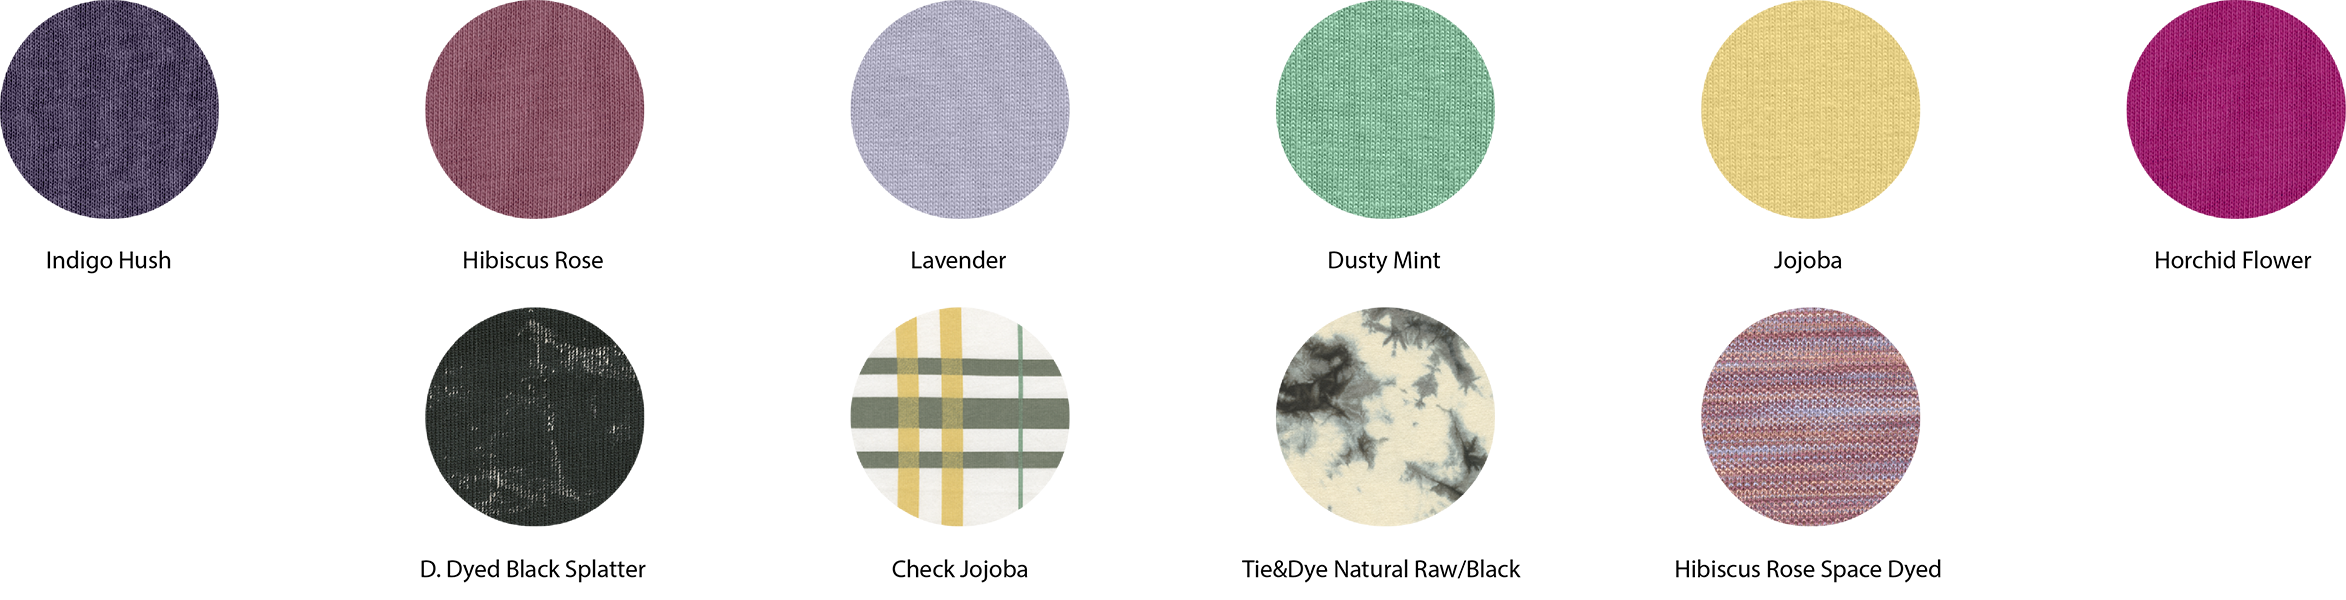 Pastilles des nouvelles couleurs de la collection Automne/Hiver 2021 de Stanley/Stella